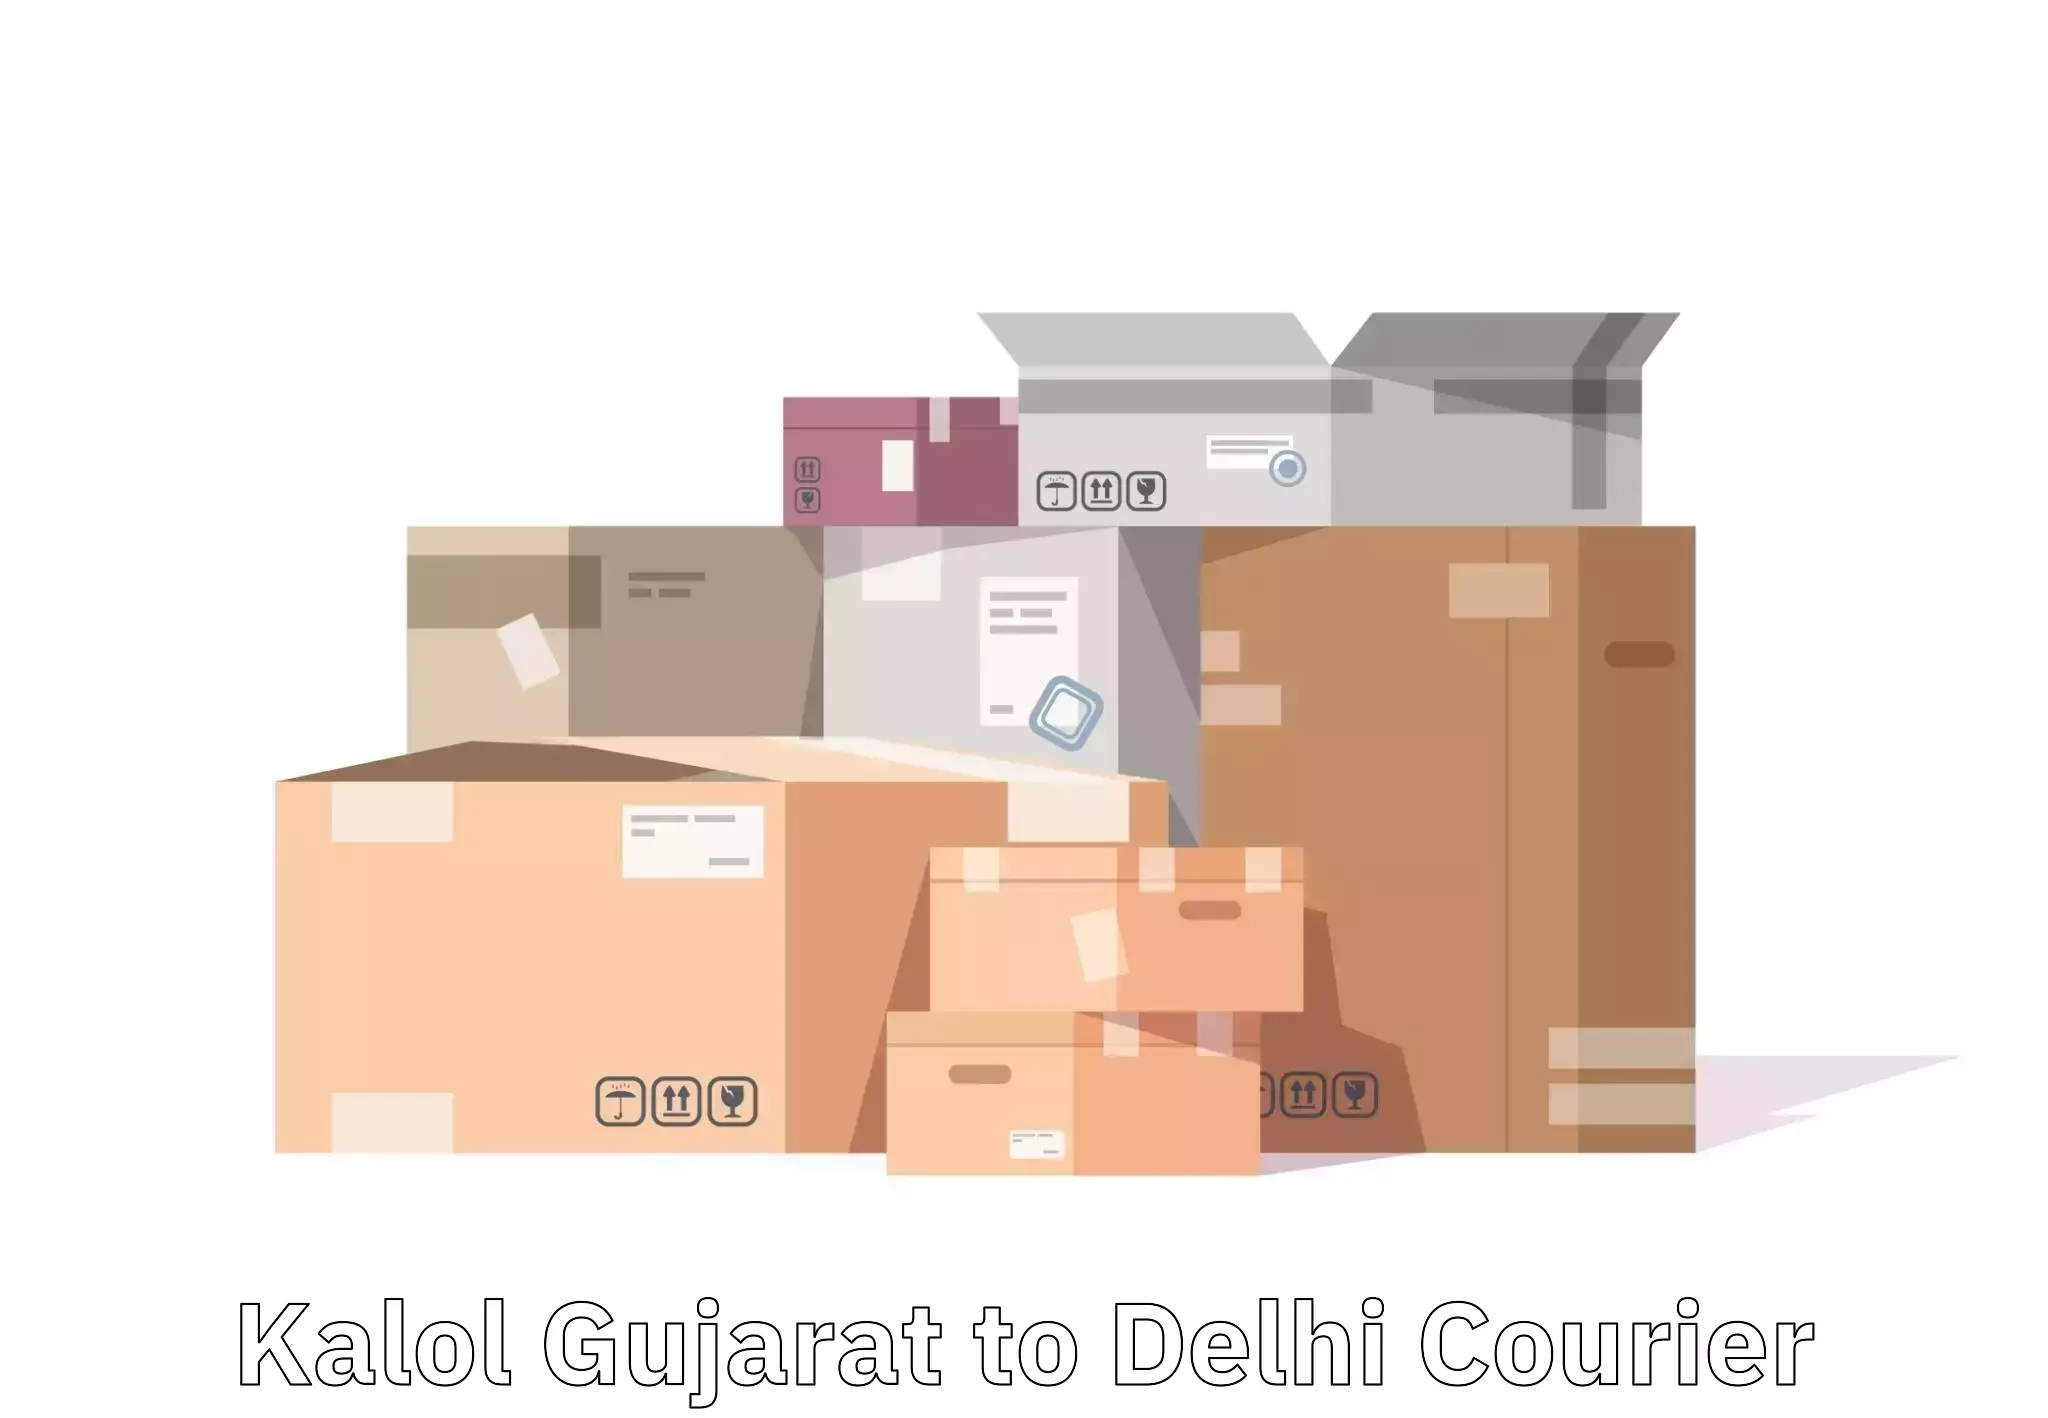 Nationwide luggage courier Kalol Gujarat to Subhash Nagar